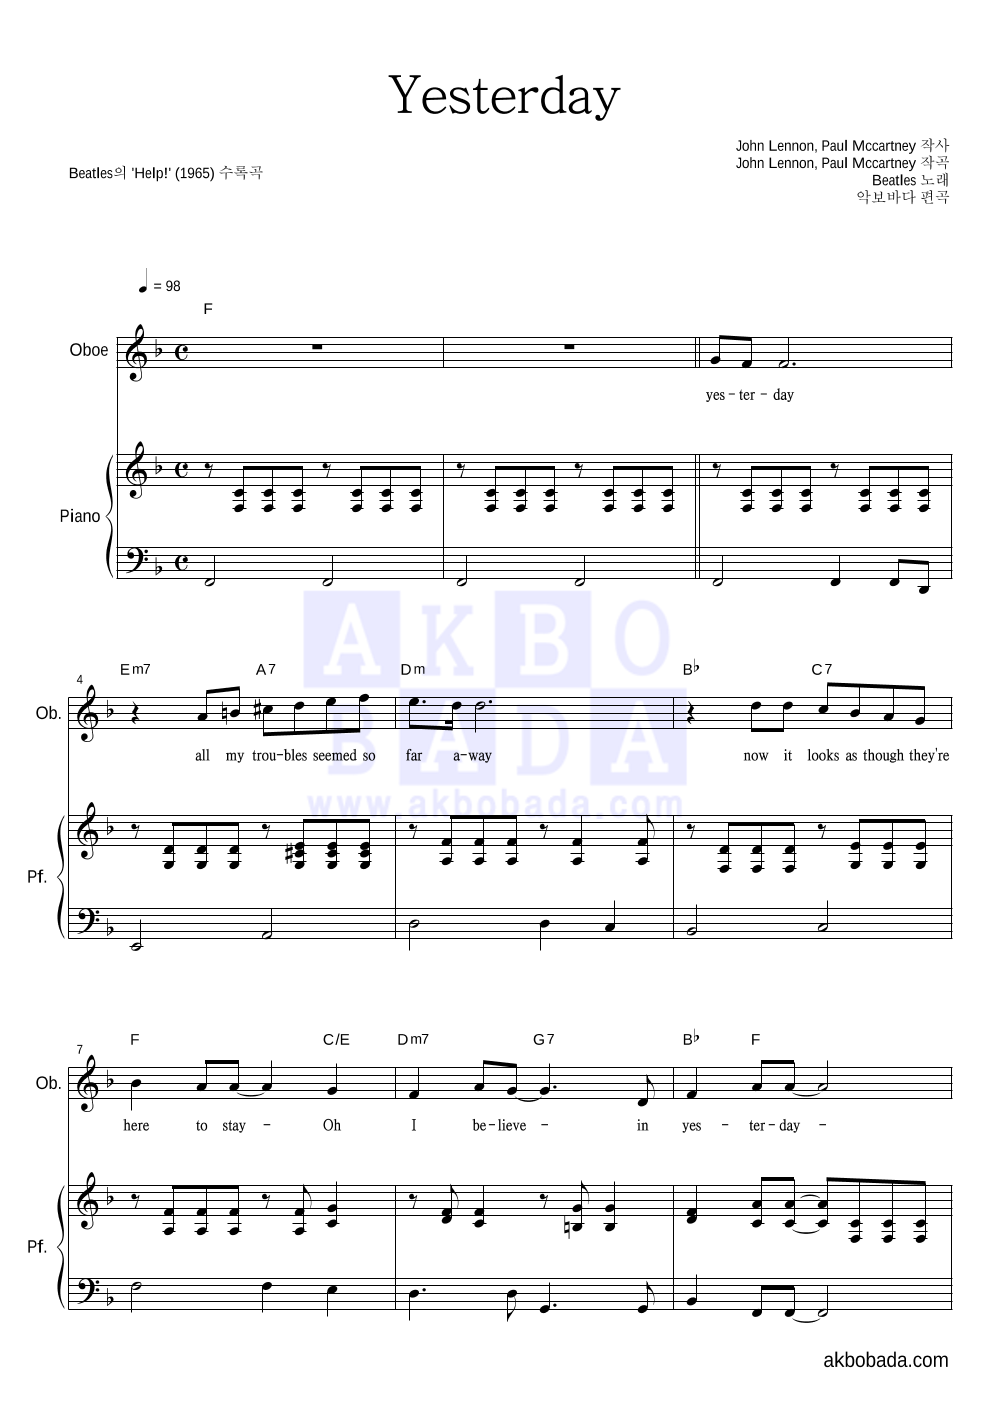 Beatles - Yesterday 오보에&피아노 악보 